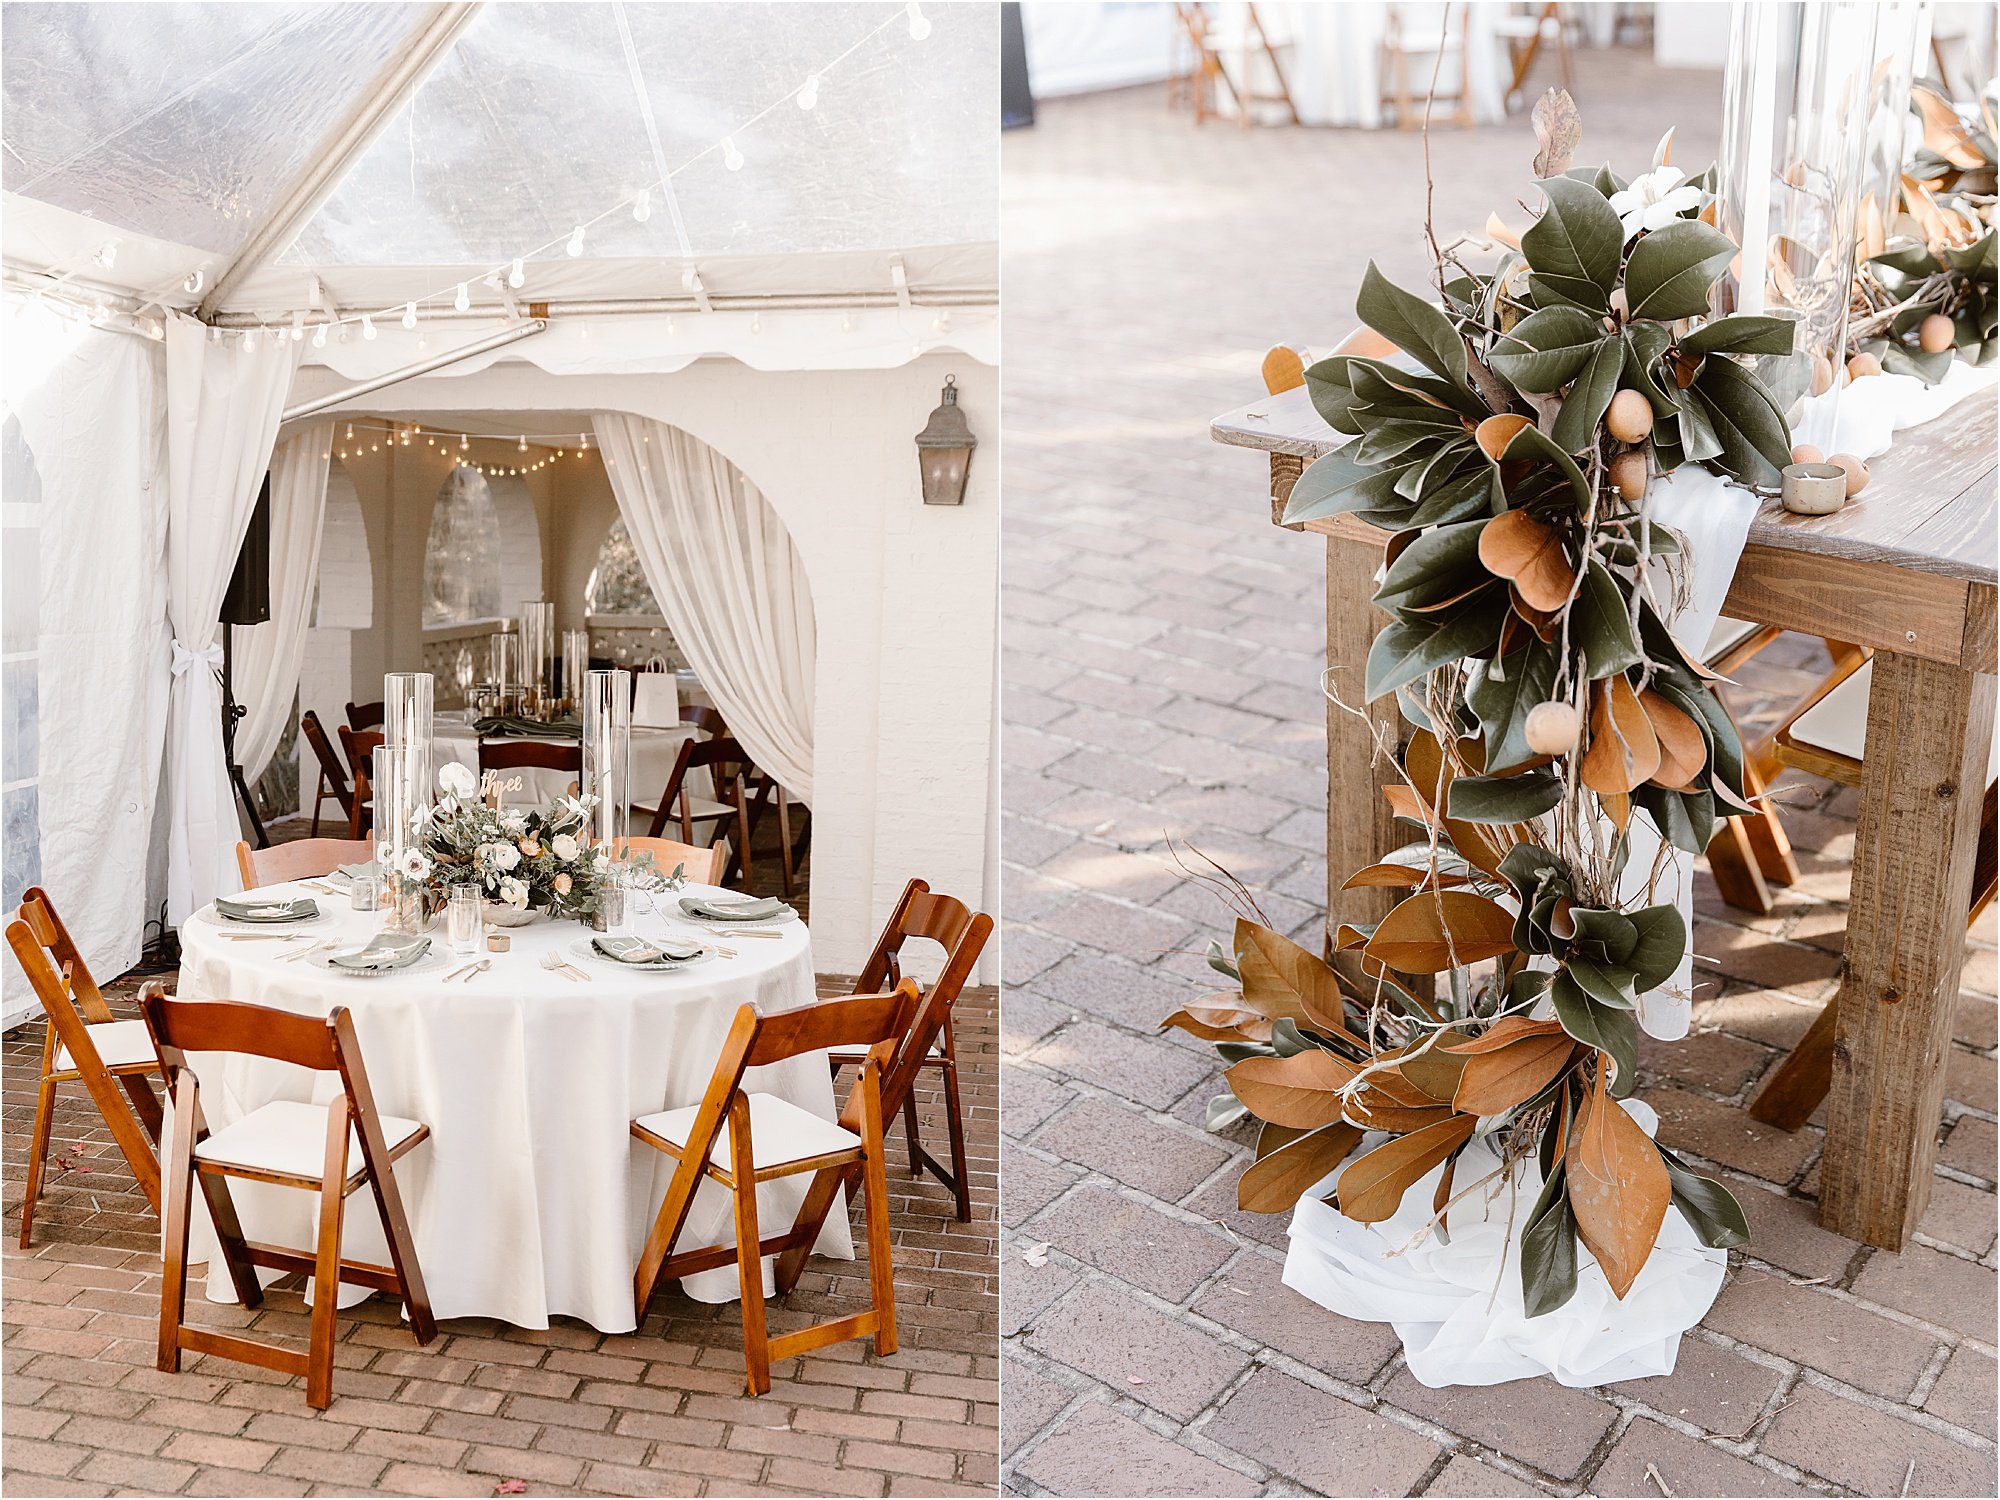 Magnolia decorations at estate black-tie wedding reception